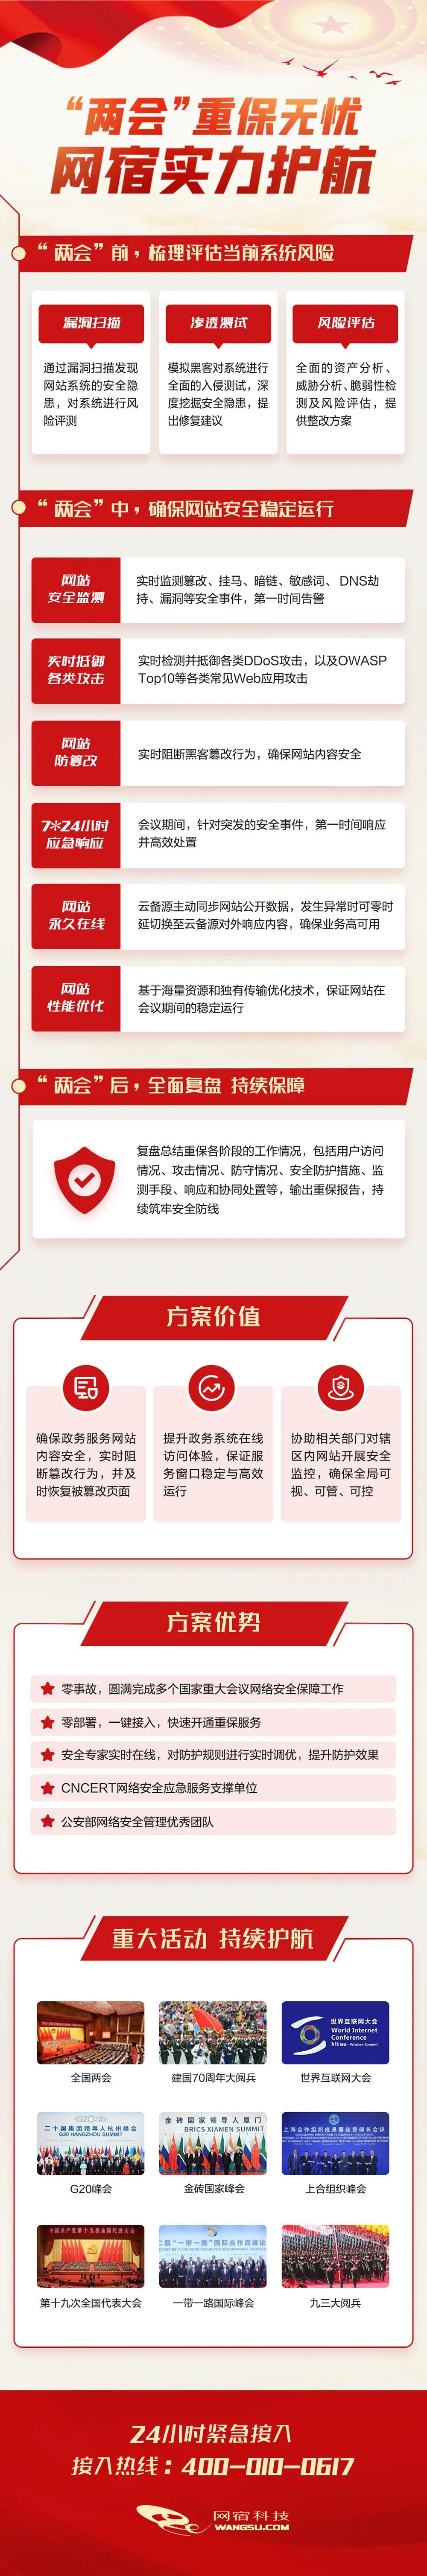 中国品牌日丨网宿科技获百亿级品牌价值评估